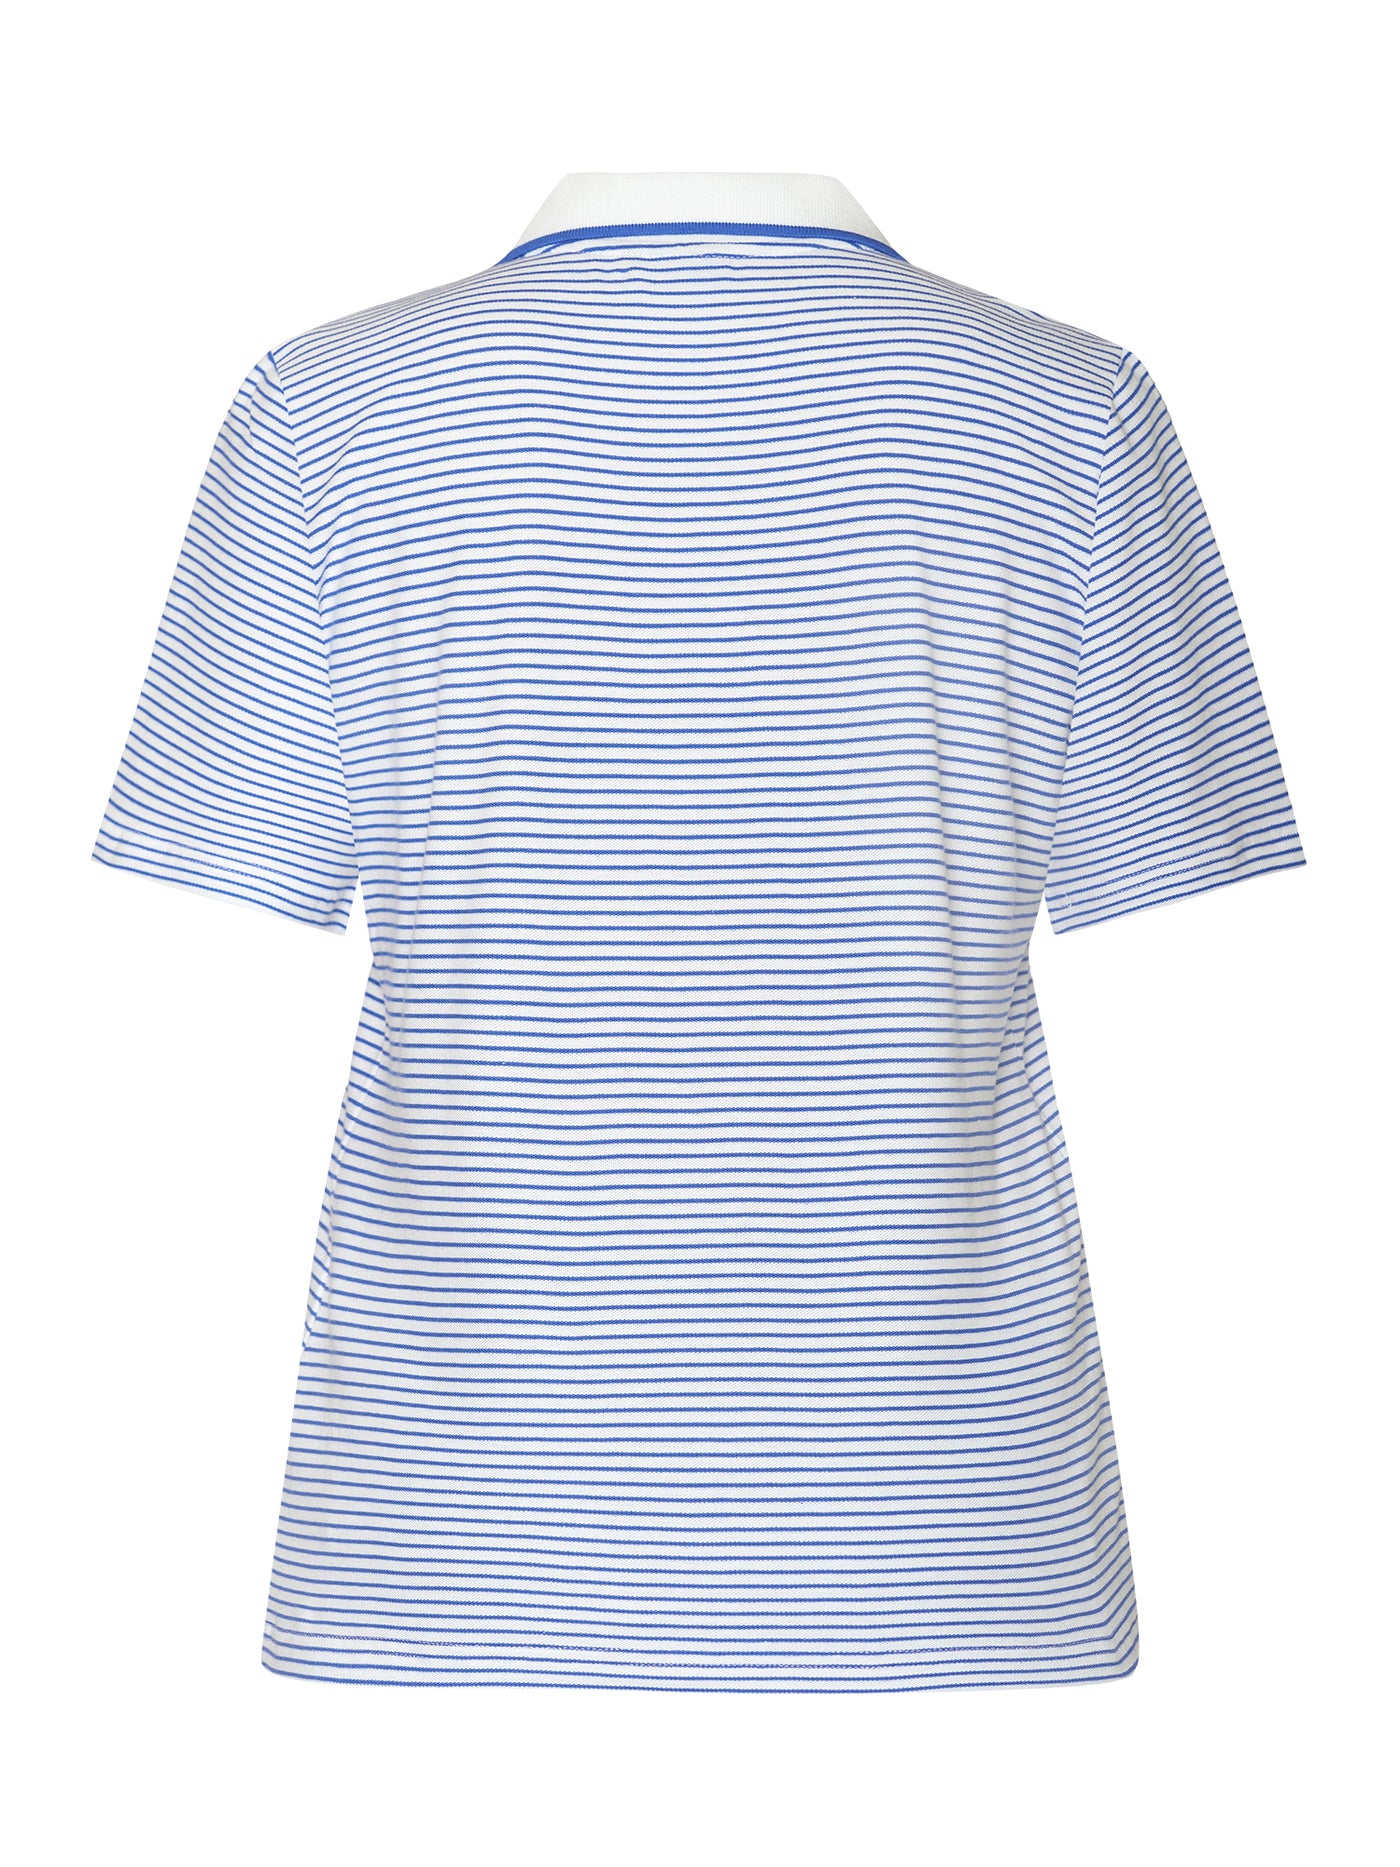 Polo T-shirt - Blå